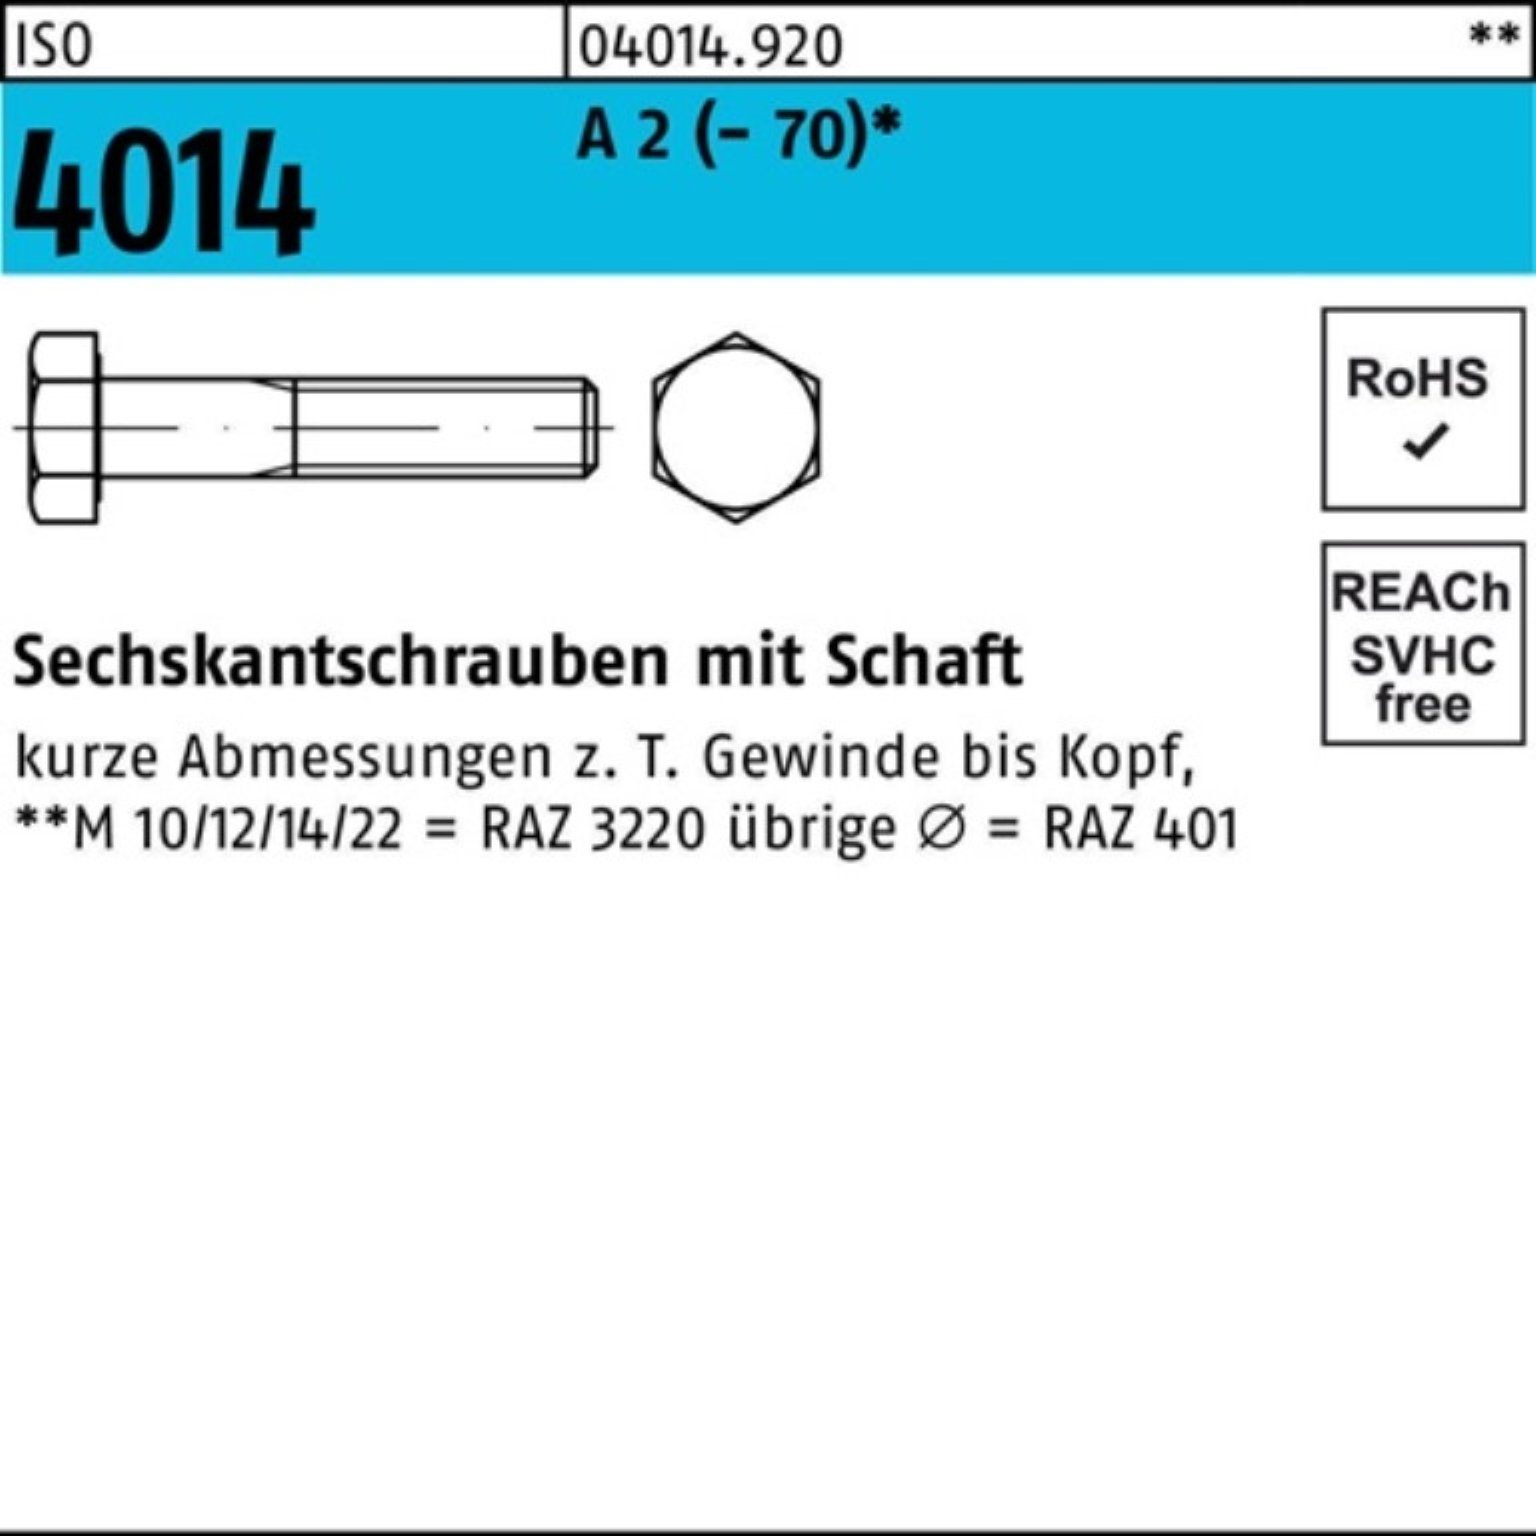 Bufab Sechskantschraube 100er Pack Sechskantschraube ISO 4014 Schaft M20x 65 A 2 (70) 1 Stü